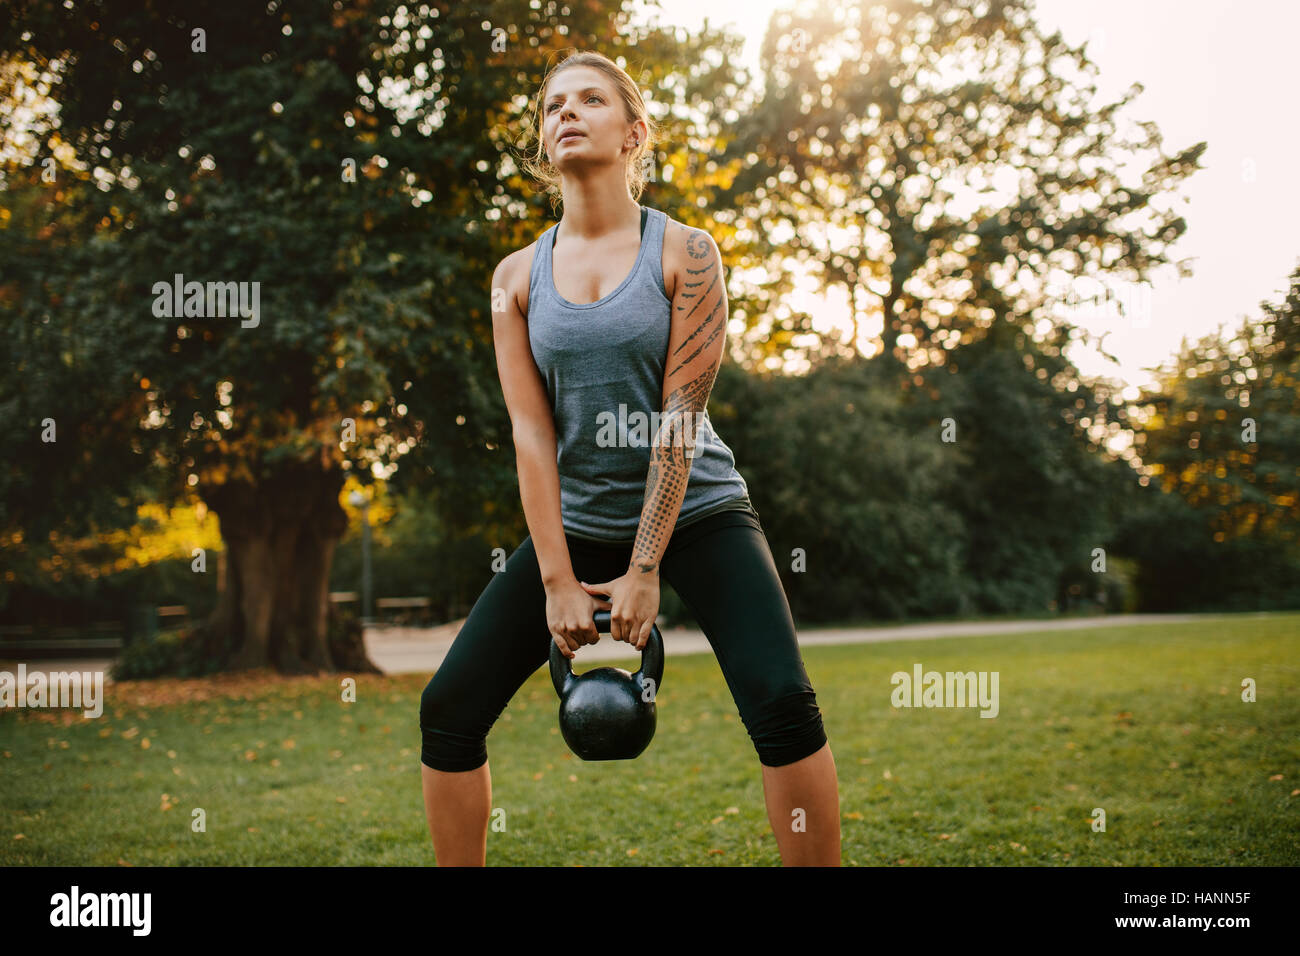 Porträt der starke junge Frau, die Training mit Kettlebell Gewichten im Park.  Fit und muskulöse Frau Ausbildung am Stadtpark in Morgen. Stockfoto